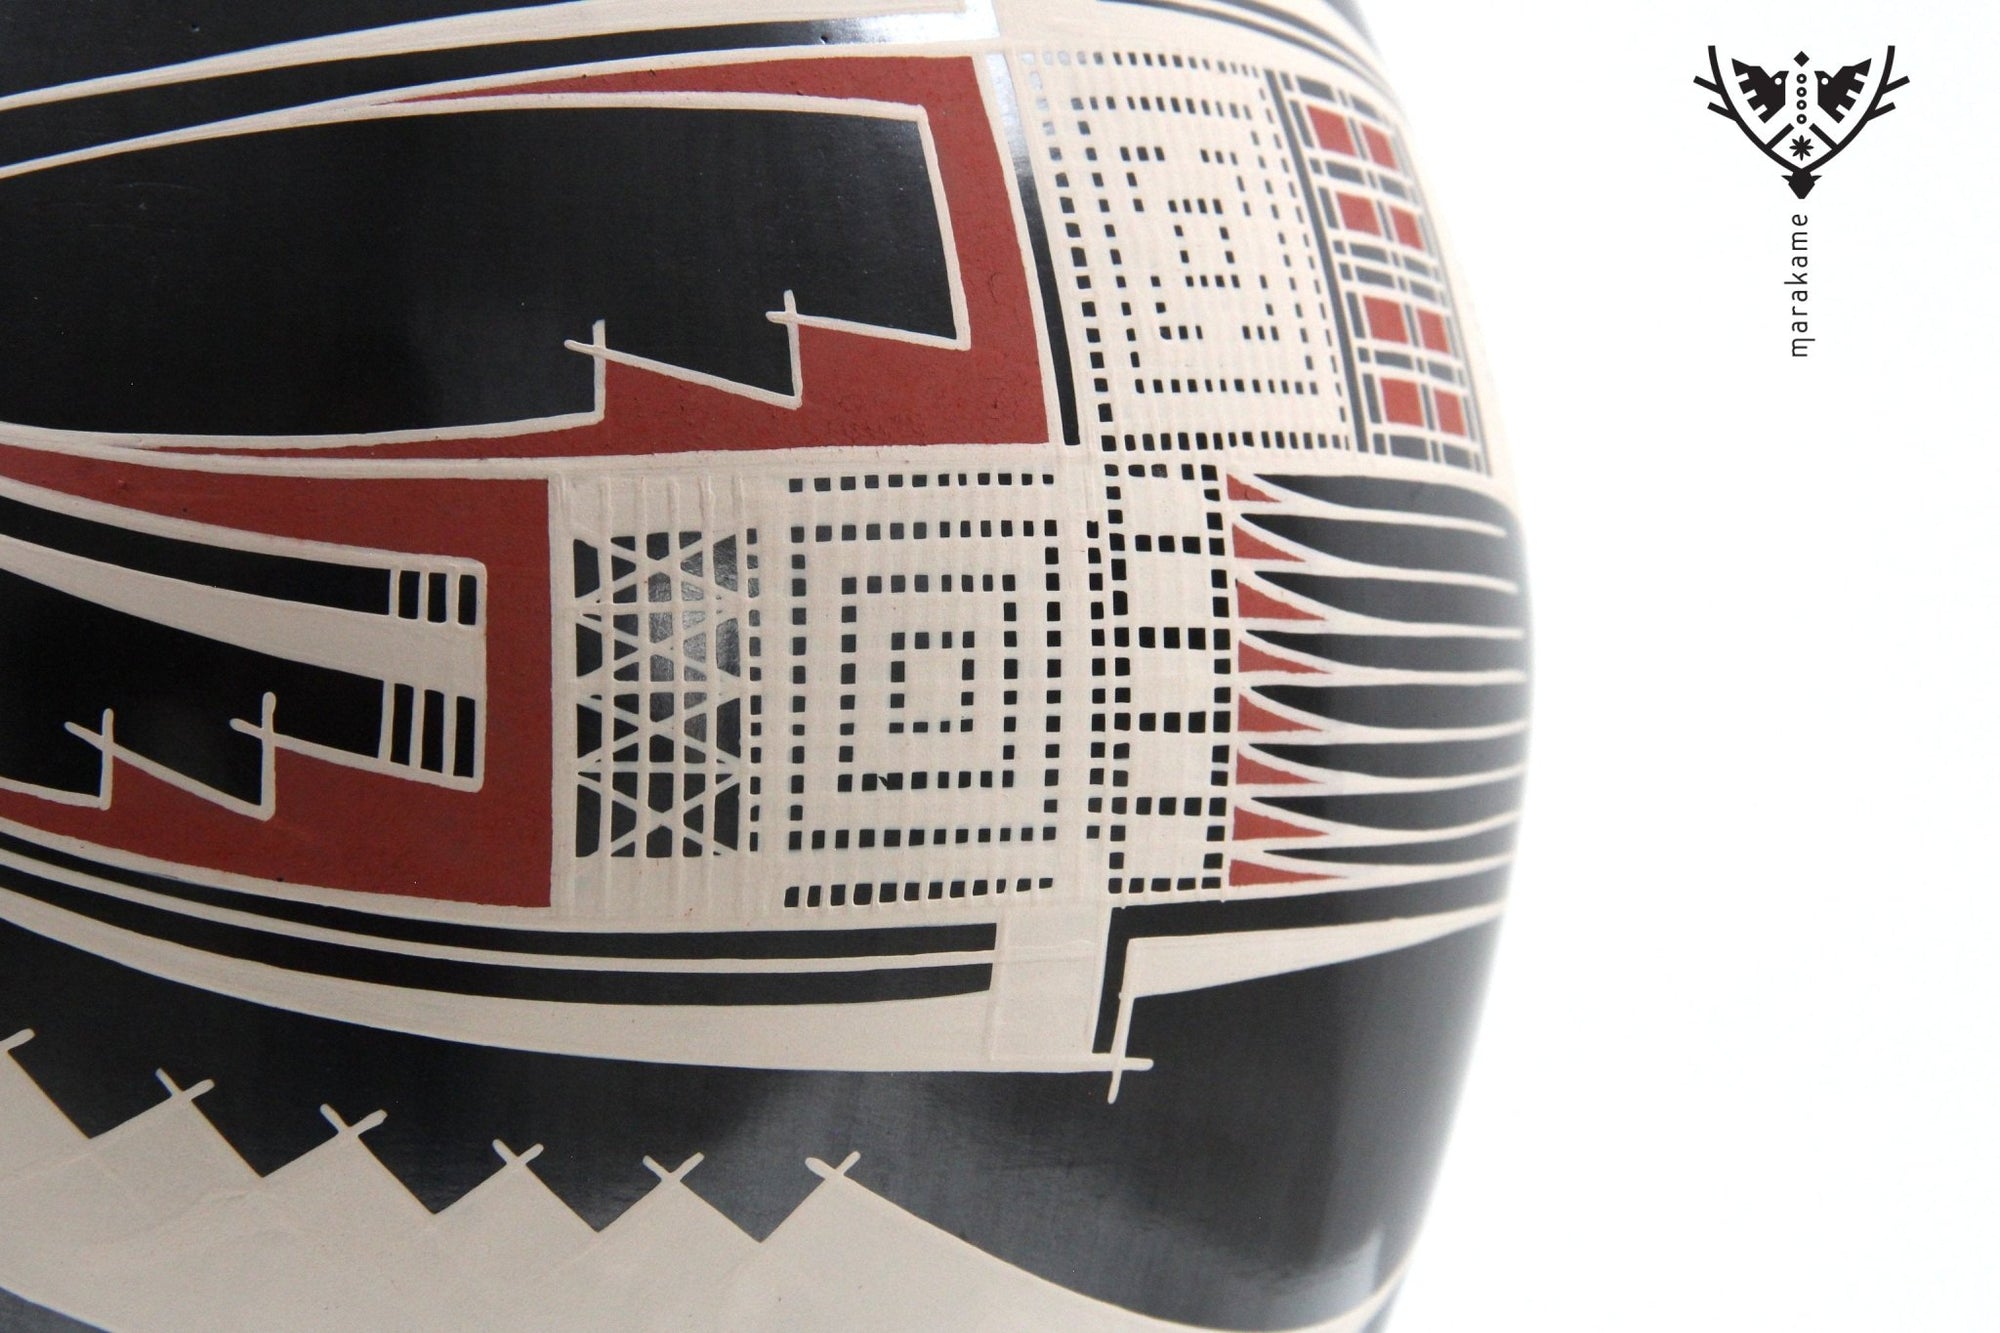 Mata Ortiz Keramik - Schwarzes Stück mit traditioneller Malerei - Huichol-Kunst - Marakame